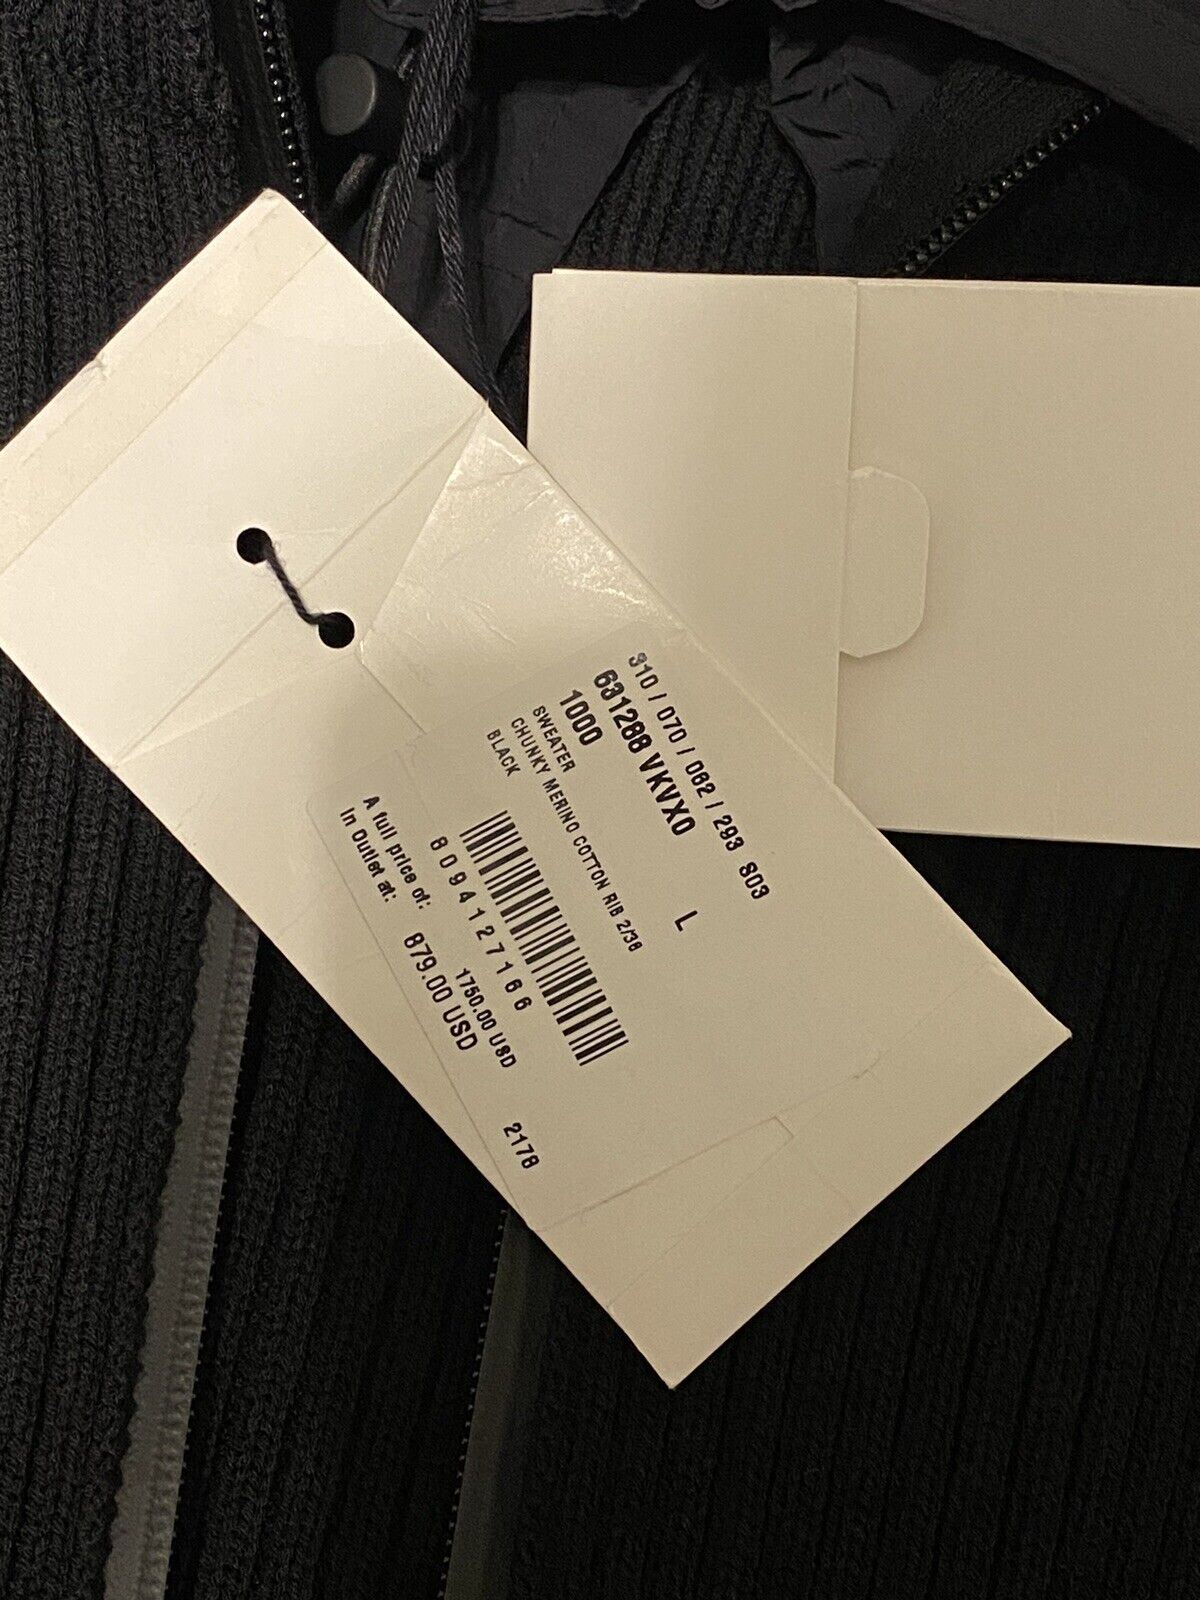 СЗТ 1750 долларов США Bottega Veneta Мужская куртка-свитер из массивного хлопка черного цвета L (подходит для размера XL)